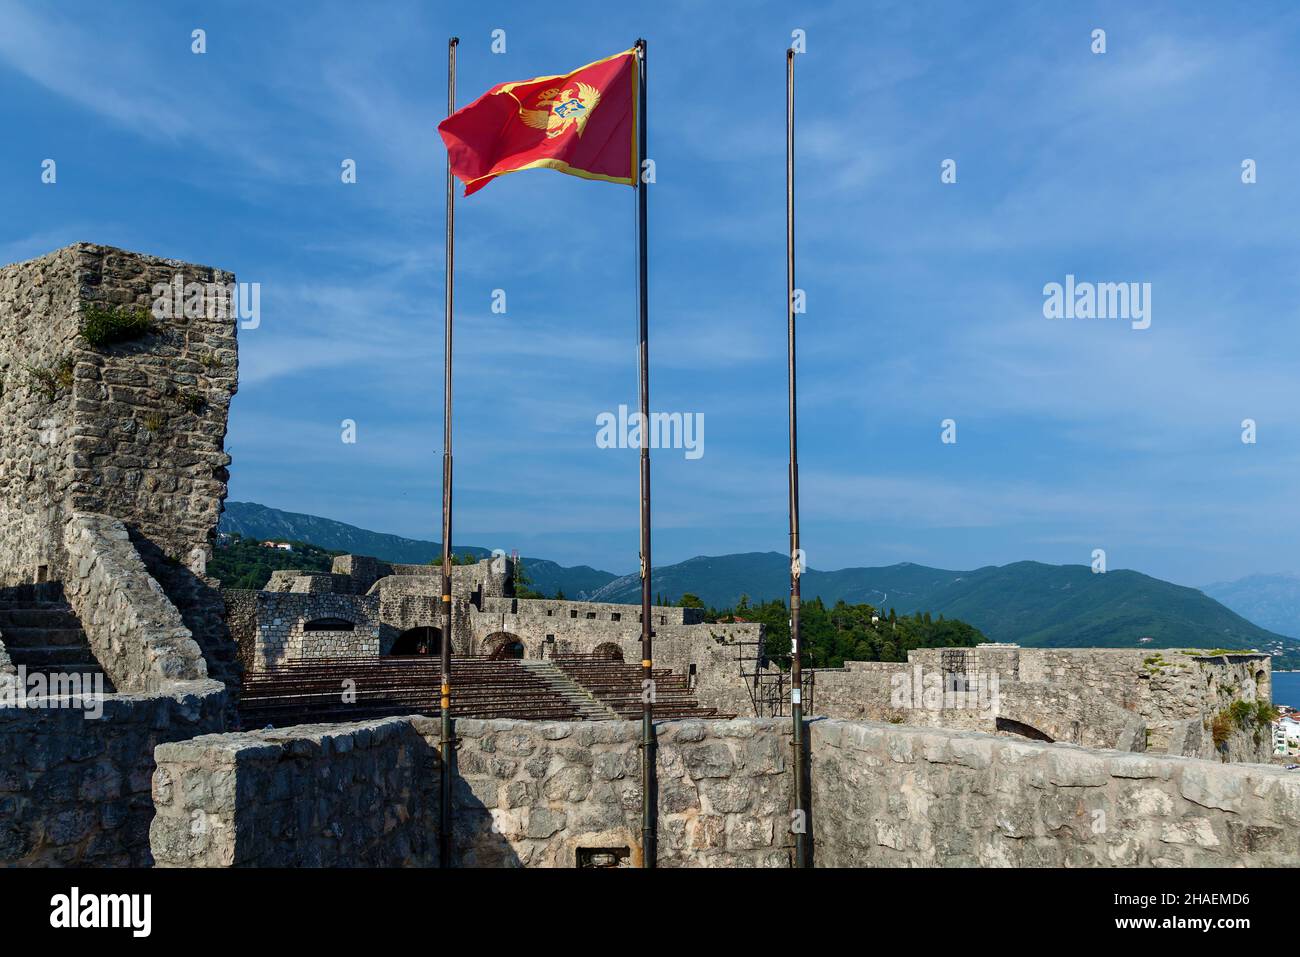 Alte Festung Blutiger Turm, Amphitheater in der Altstadt von Herceg Novi, Montenegro Stockfoto